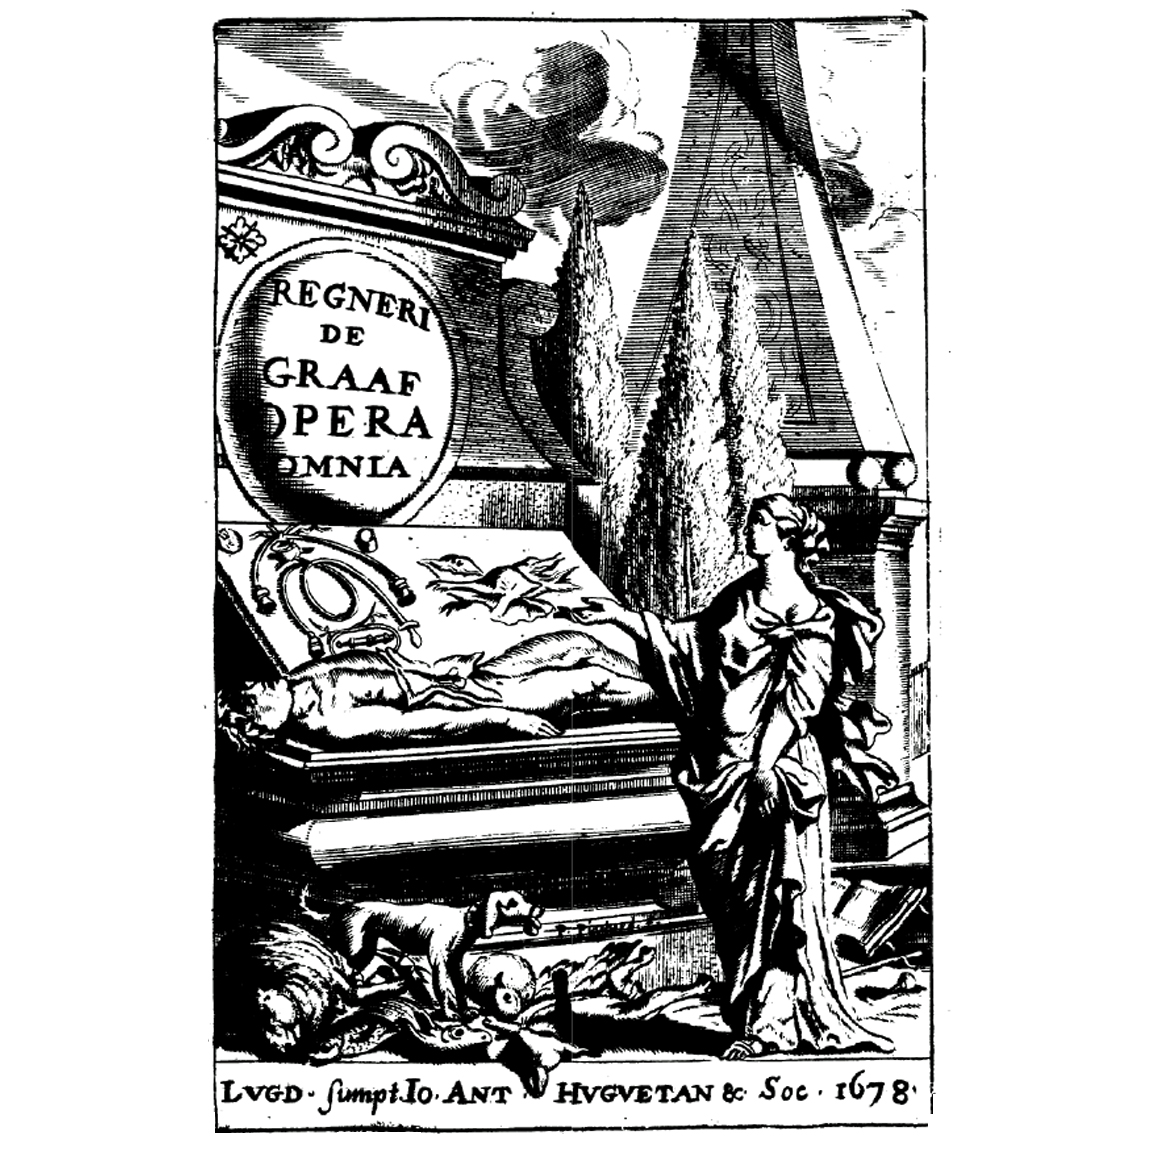 1678-DE_GRAAF-Opera_omnia-titre